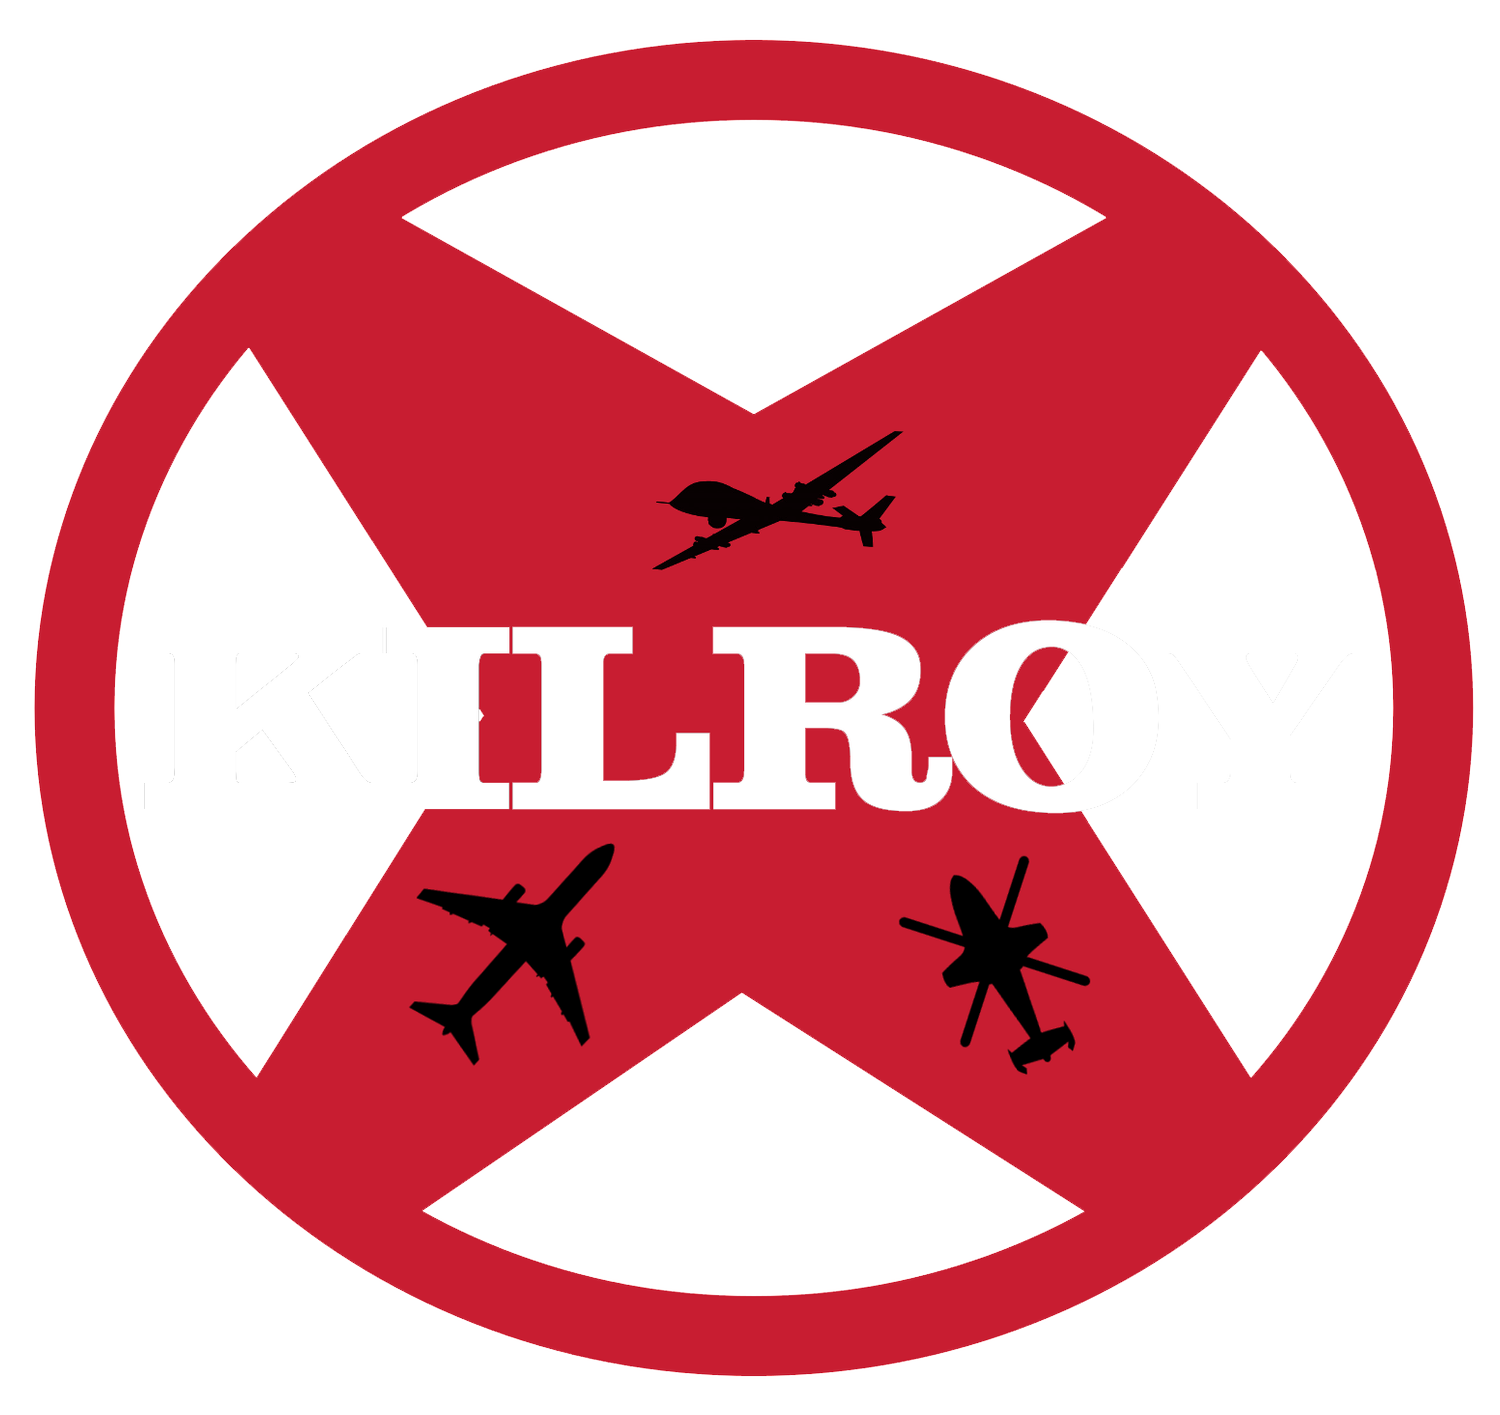 Kilroy Aviation, LLC